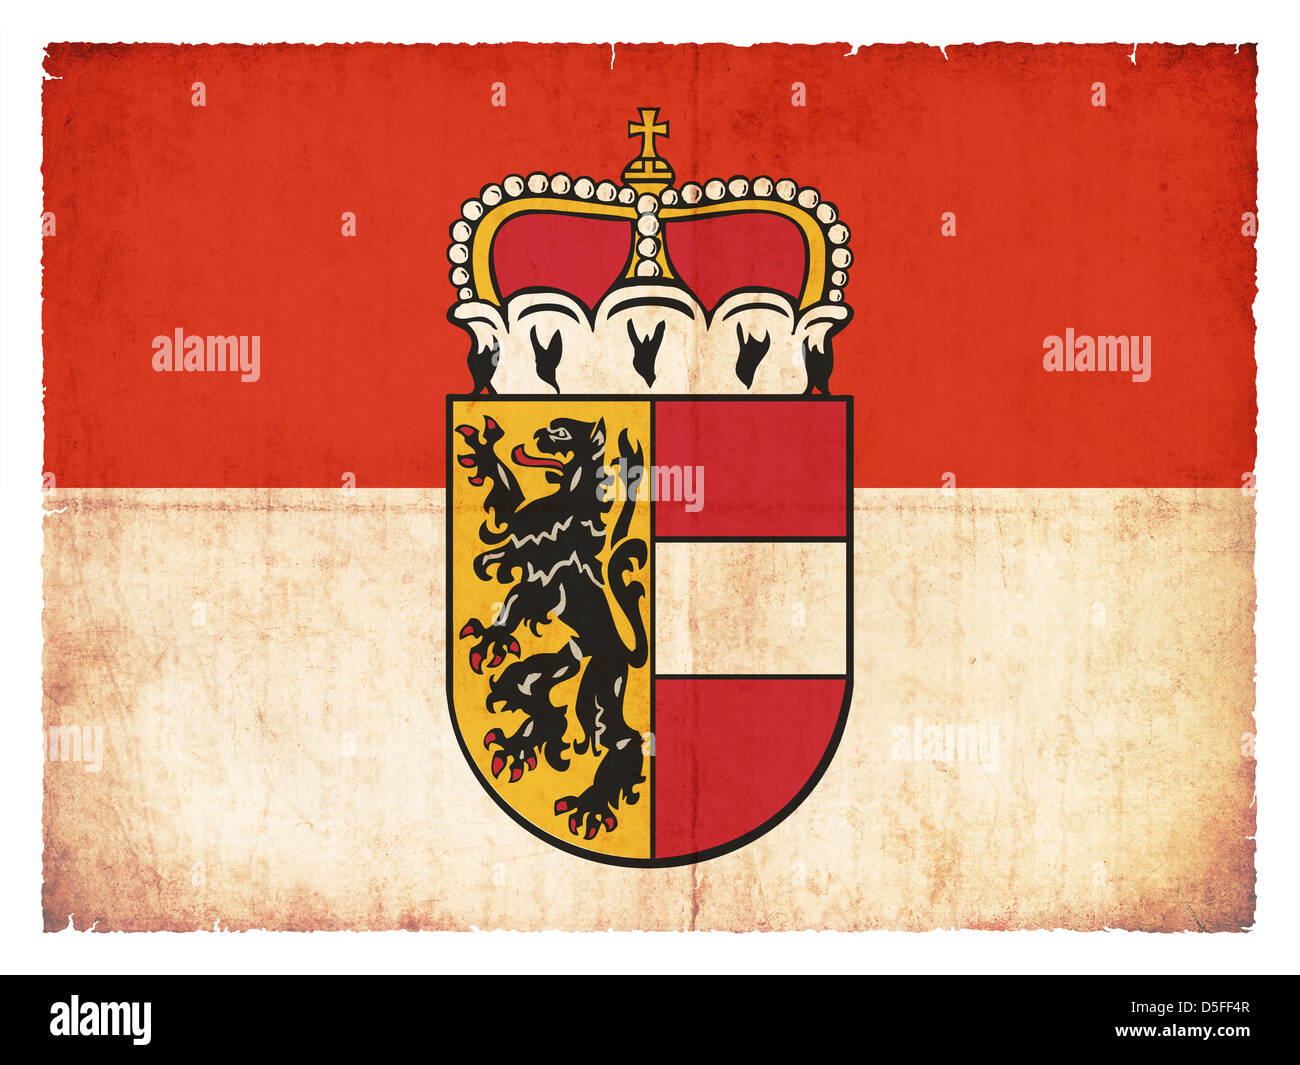 Bandiera della provincia austriaca Salisburgo creato in stile grunge Foto Stock